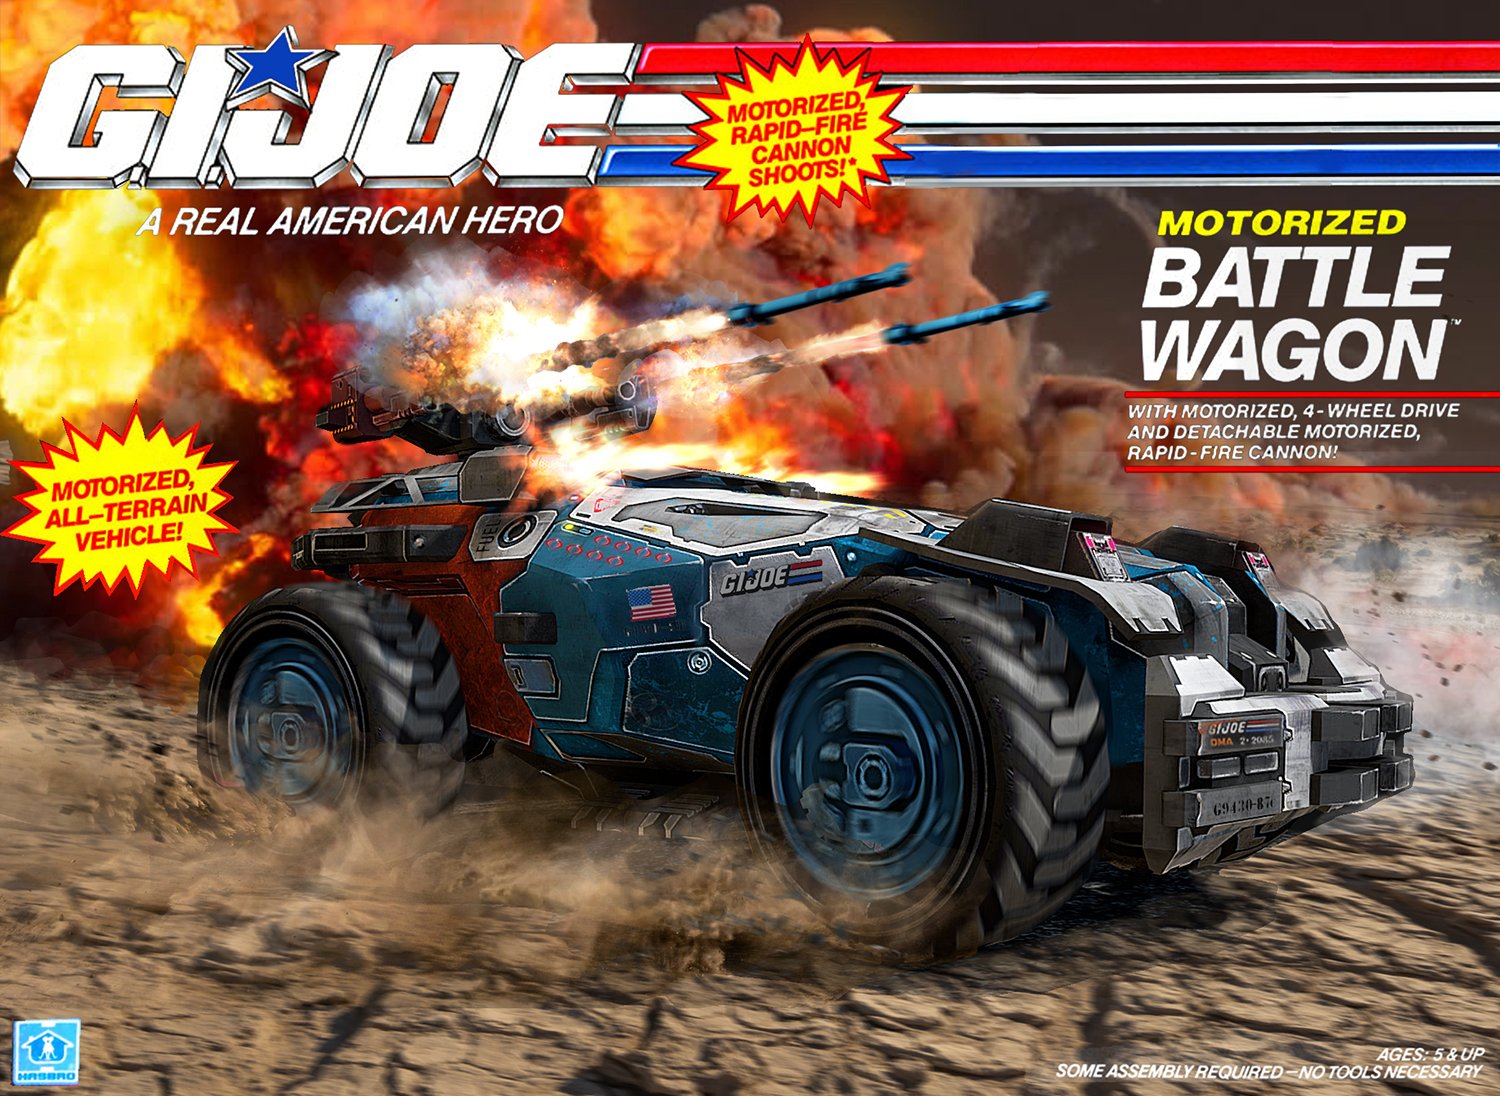 GI Joe Battle Wagon.jpg